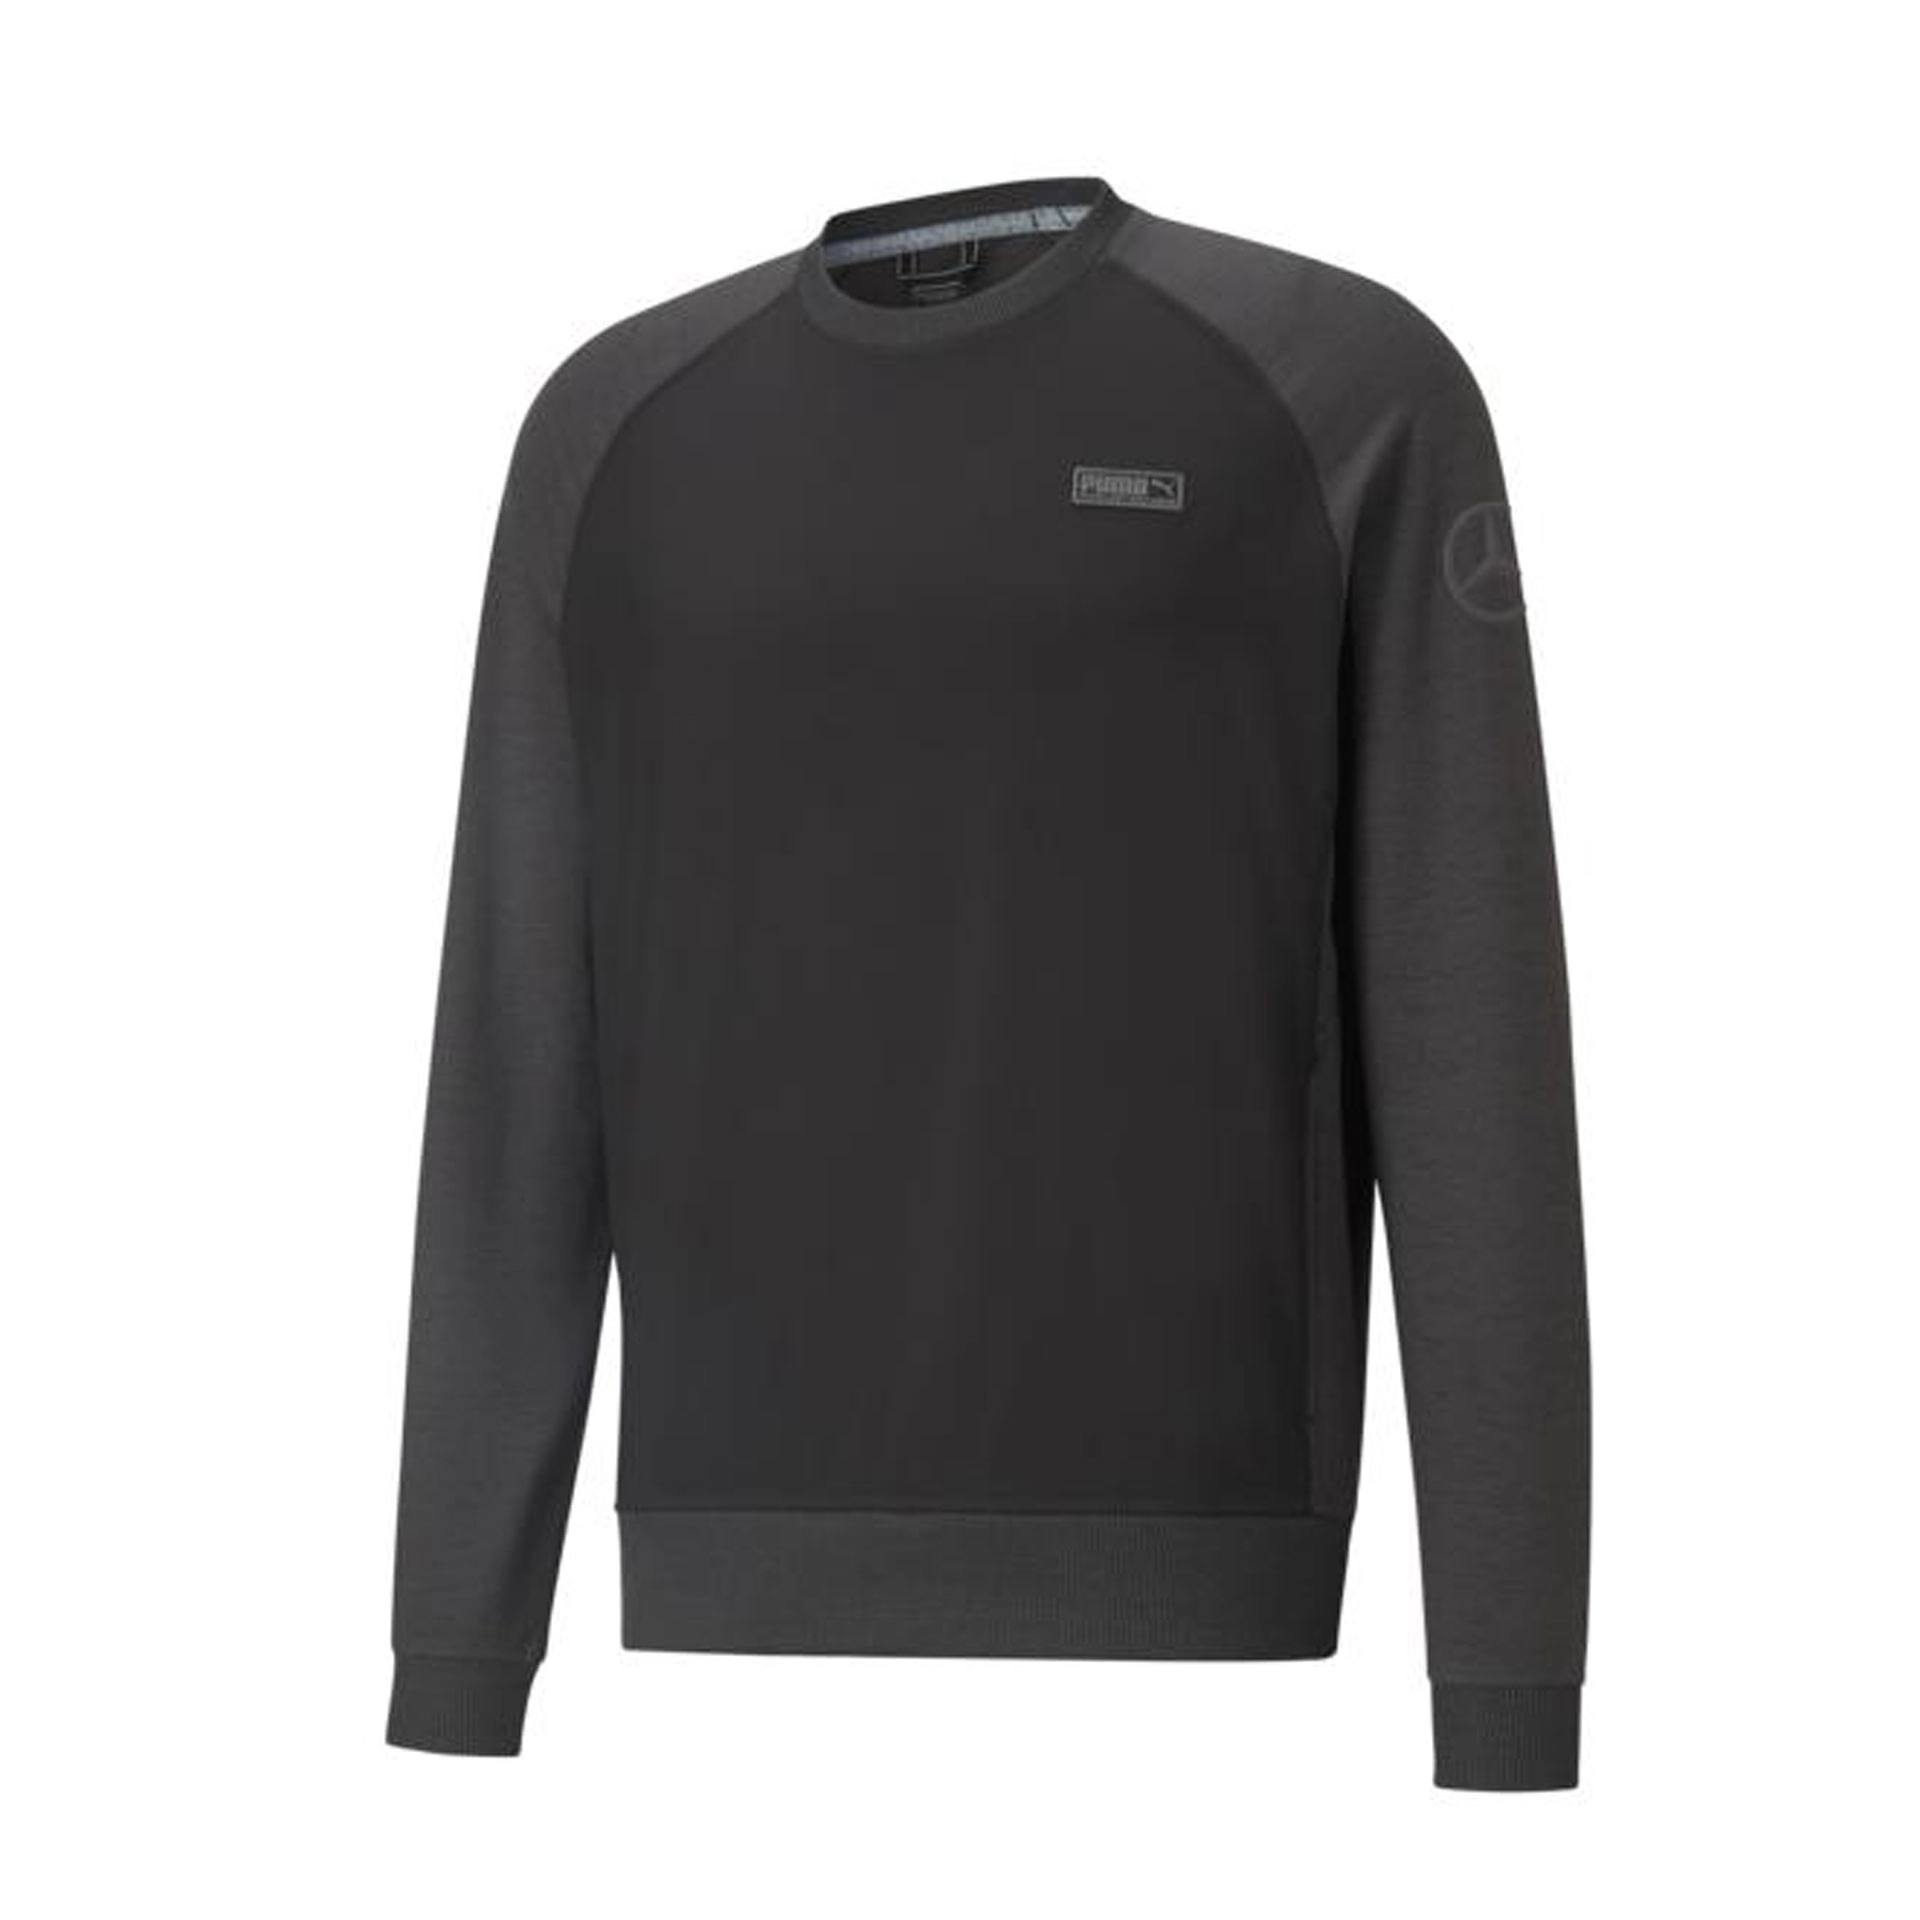 B66455020 mercedes benz golf sweater schwarz dunkelgrau rosier onlineshop